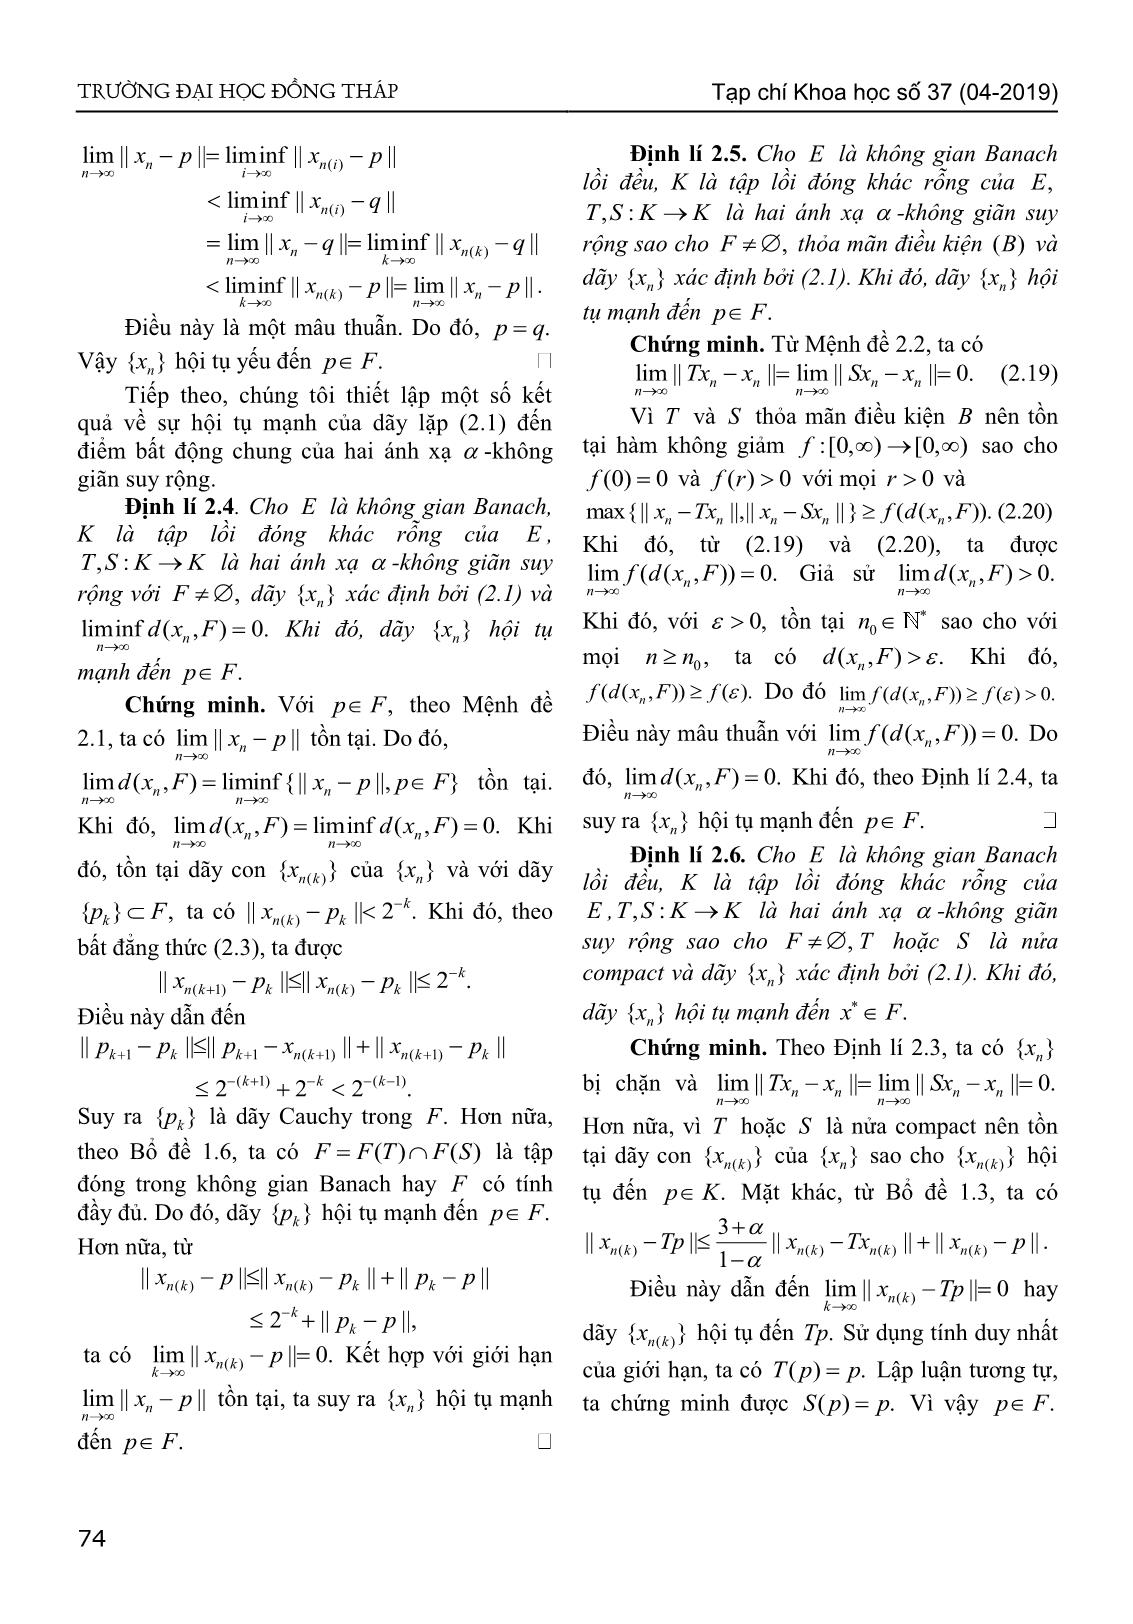 Sự hội tụ của dãy lặp kiểu Agarwal đến điểm bất động chung của hai ánh xạ - Không giãn suy rộng trong không gian Banach lồi đều trang 5